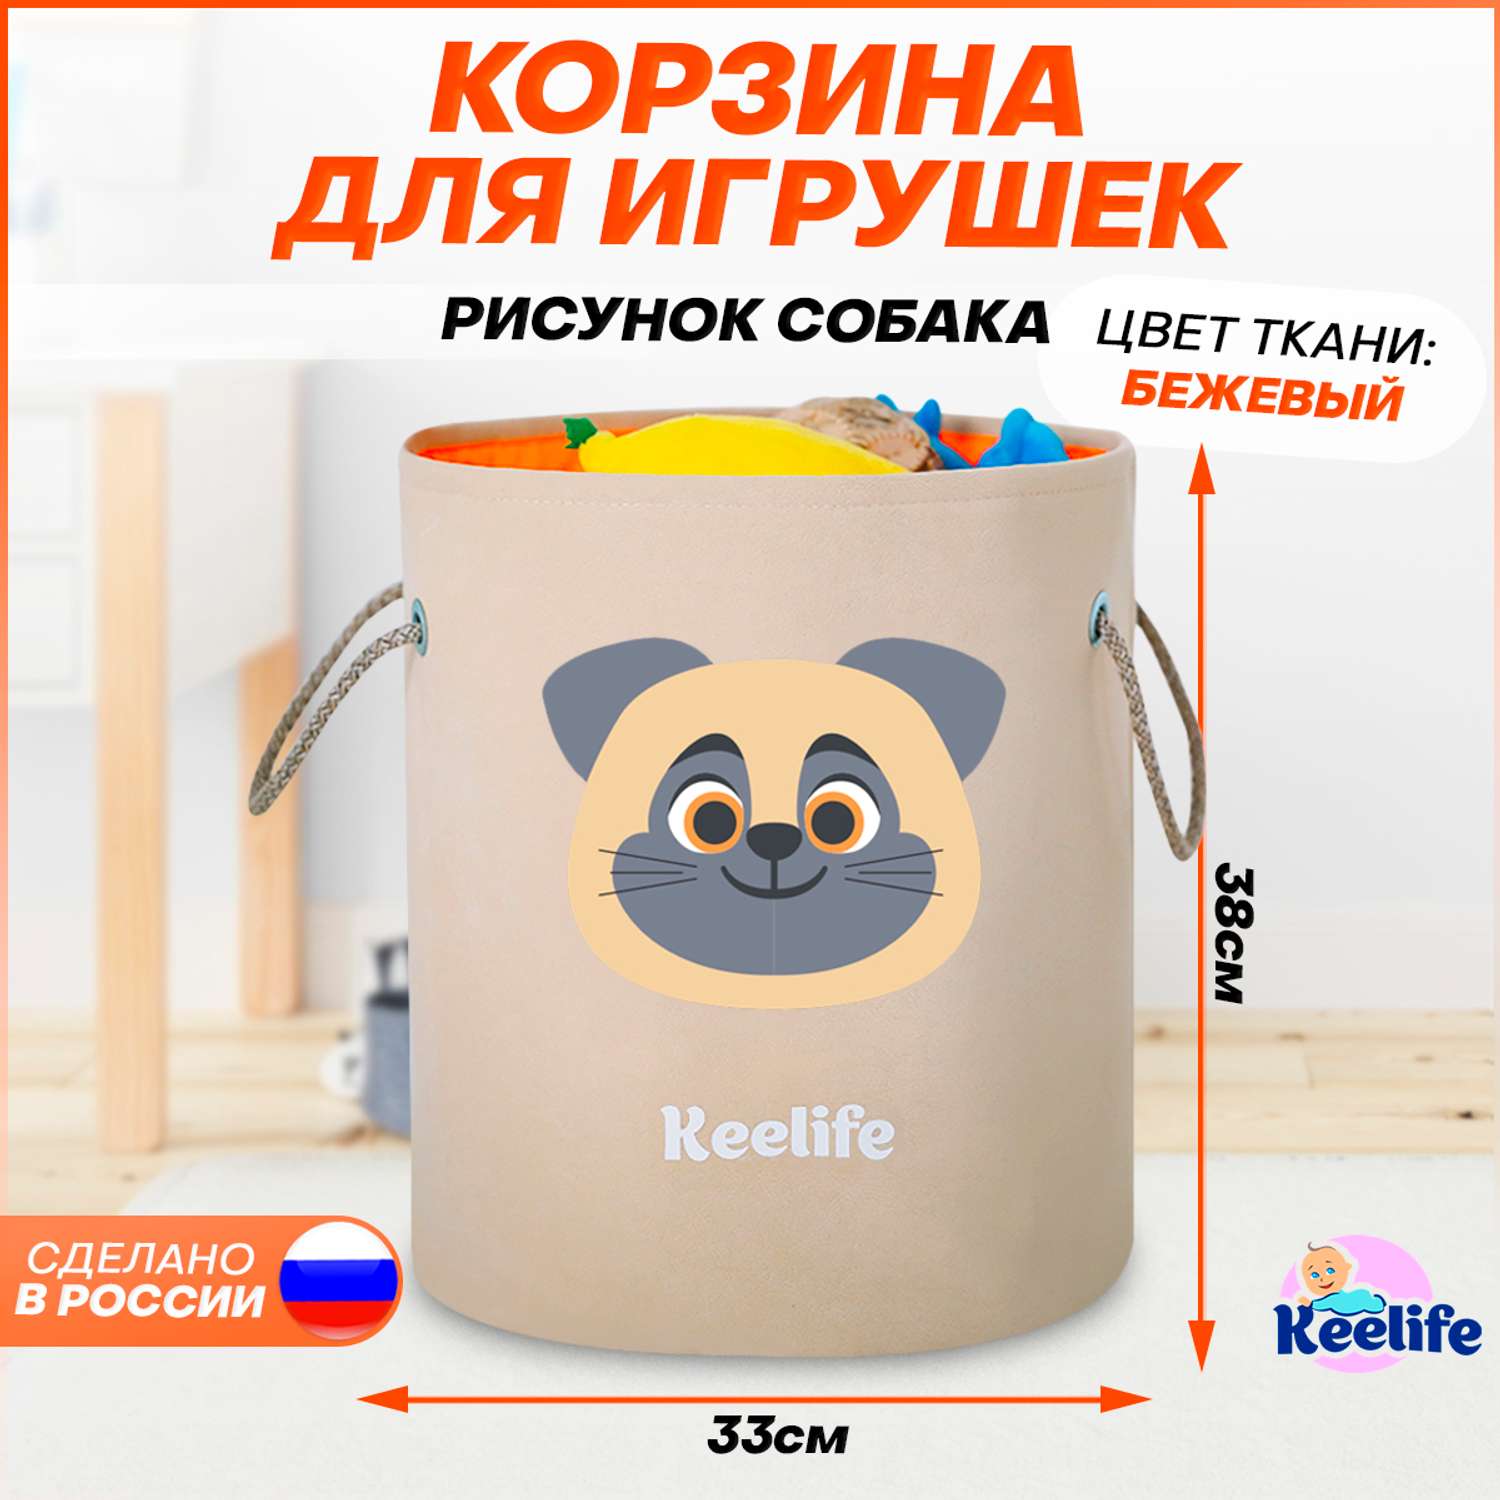 Корзина для игрушек Keelife хранения Собака бежевый-оранжевый - фото 6